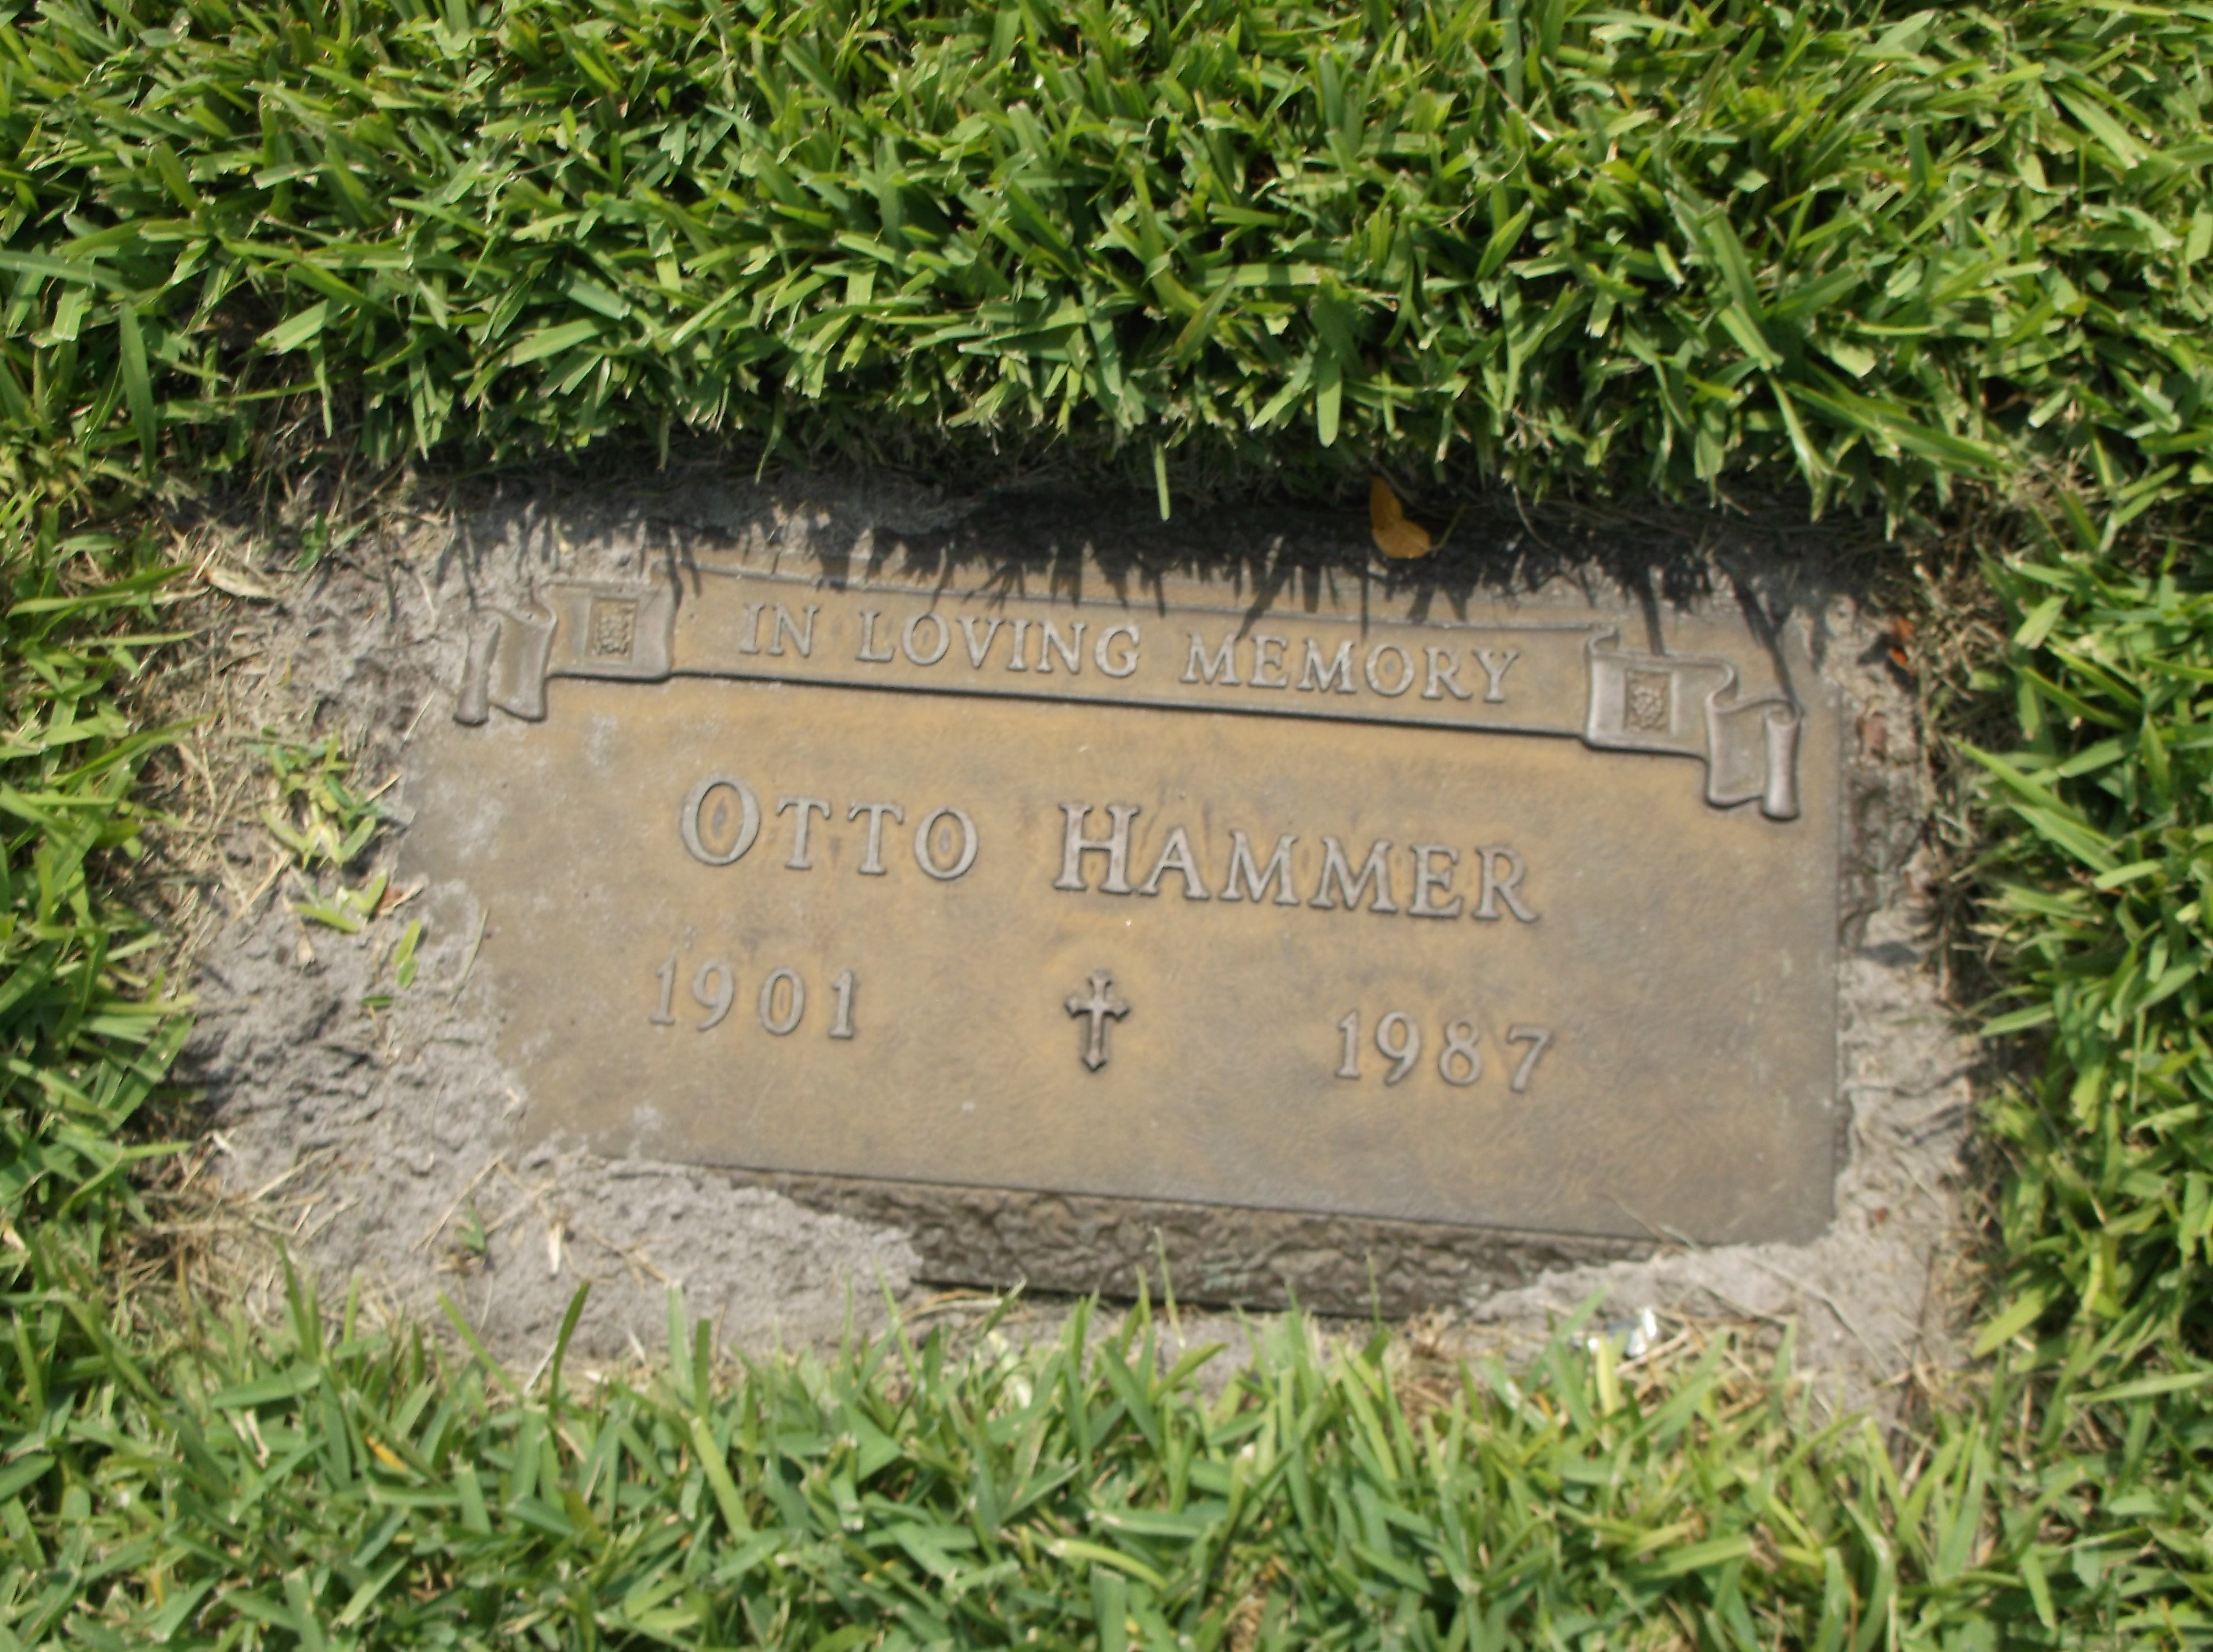 Otto Hammer